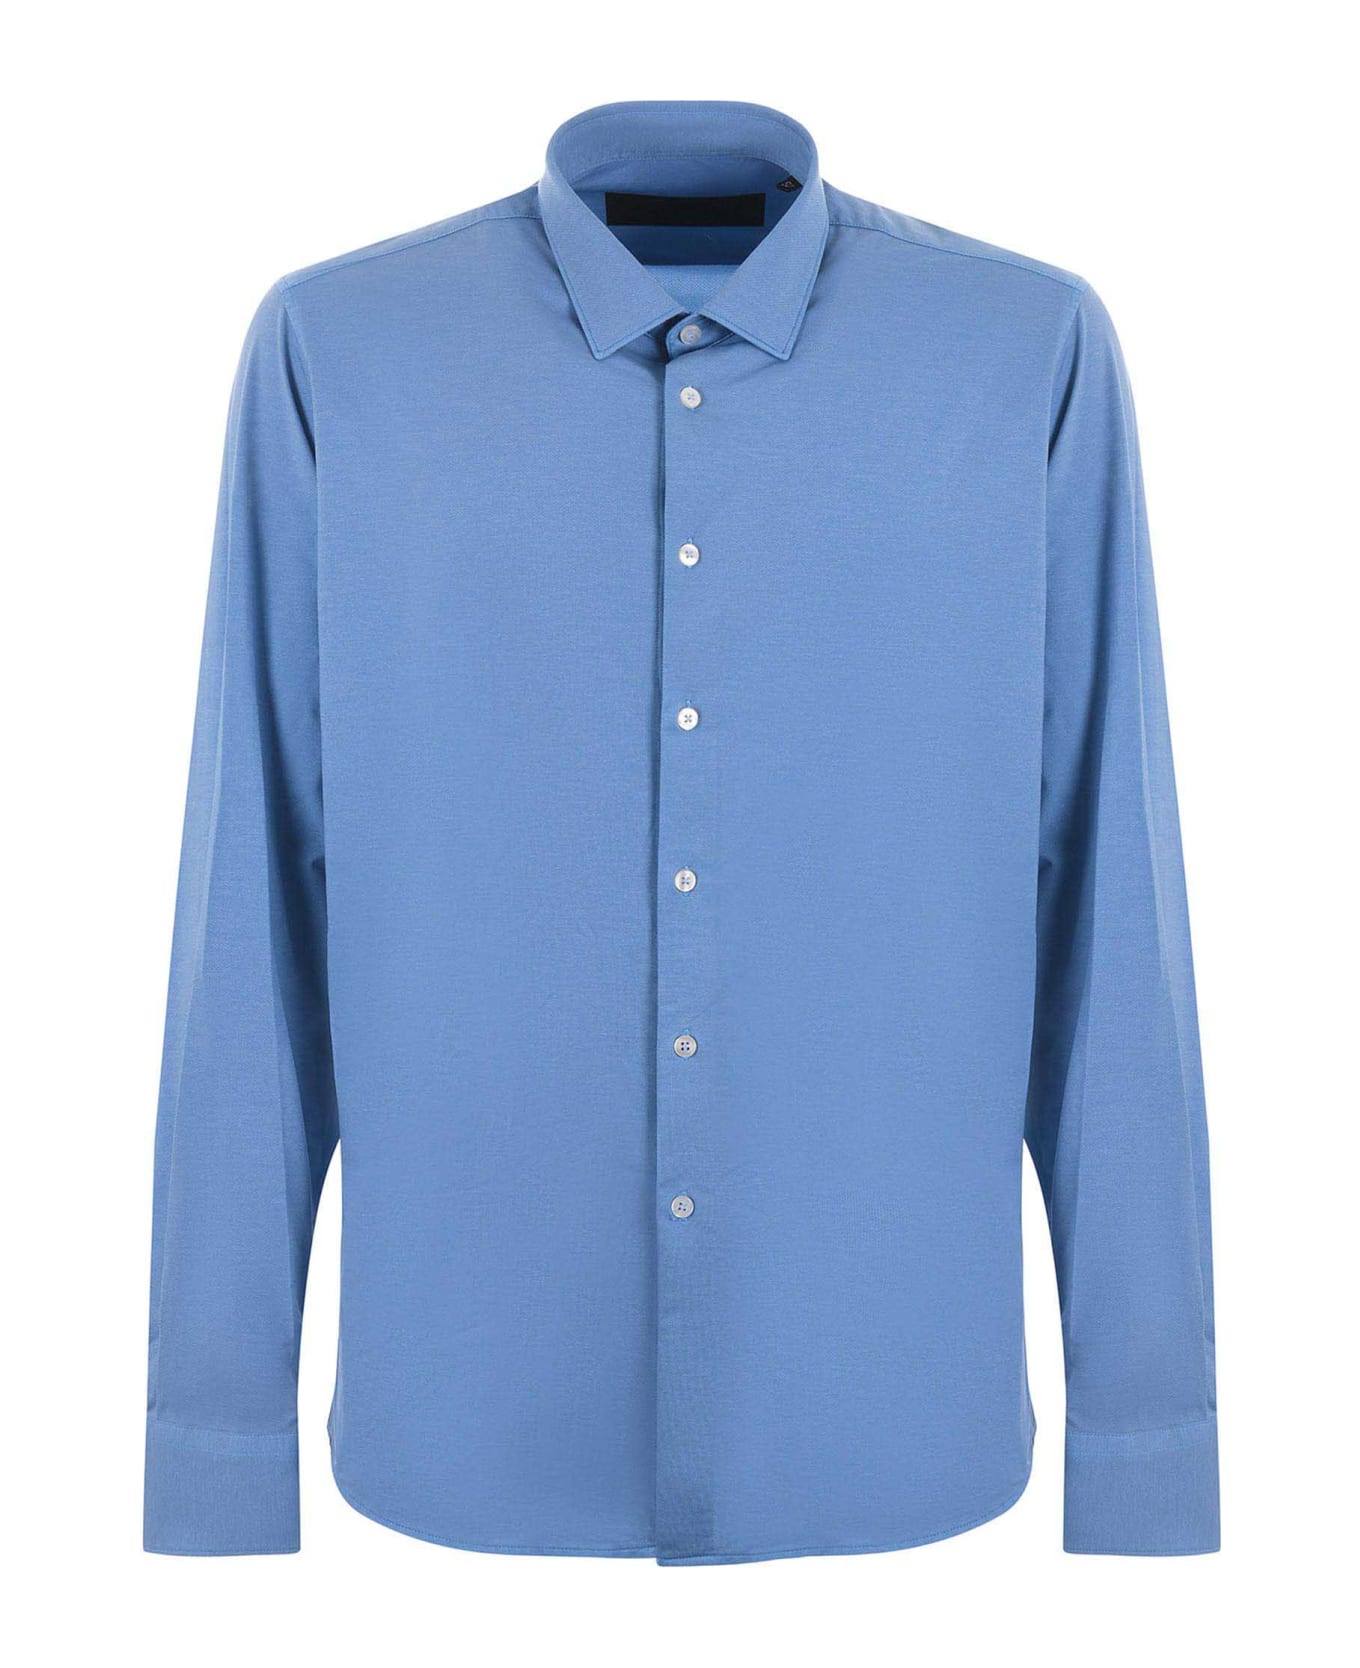 RRD - Roberto Ricci Design Rrd Shirt - Azzurro